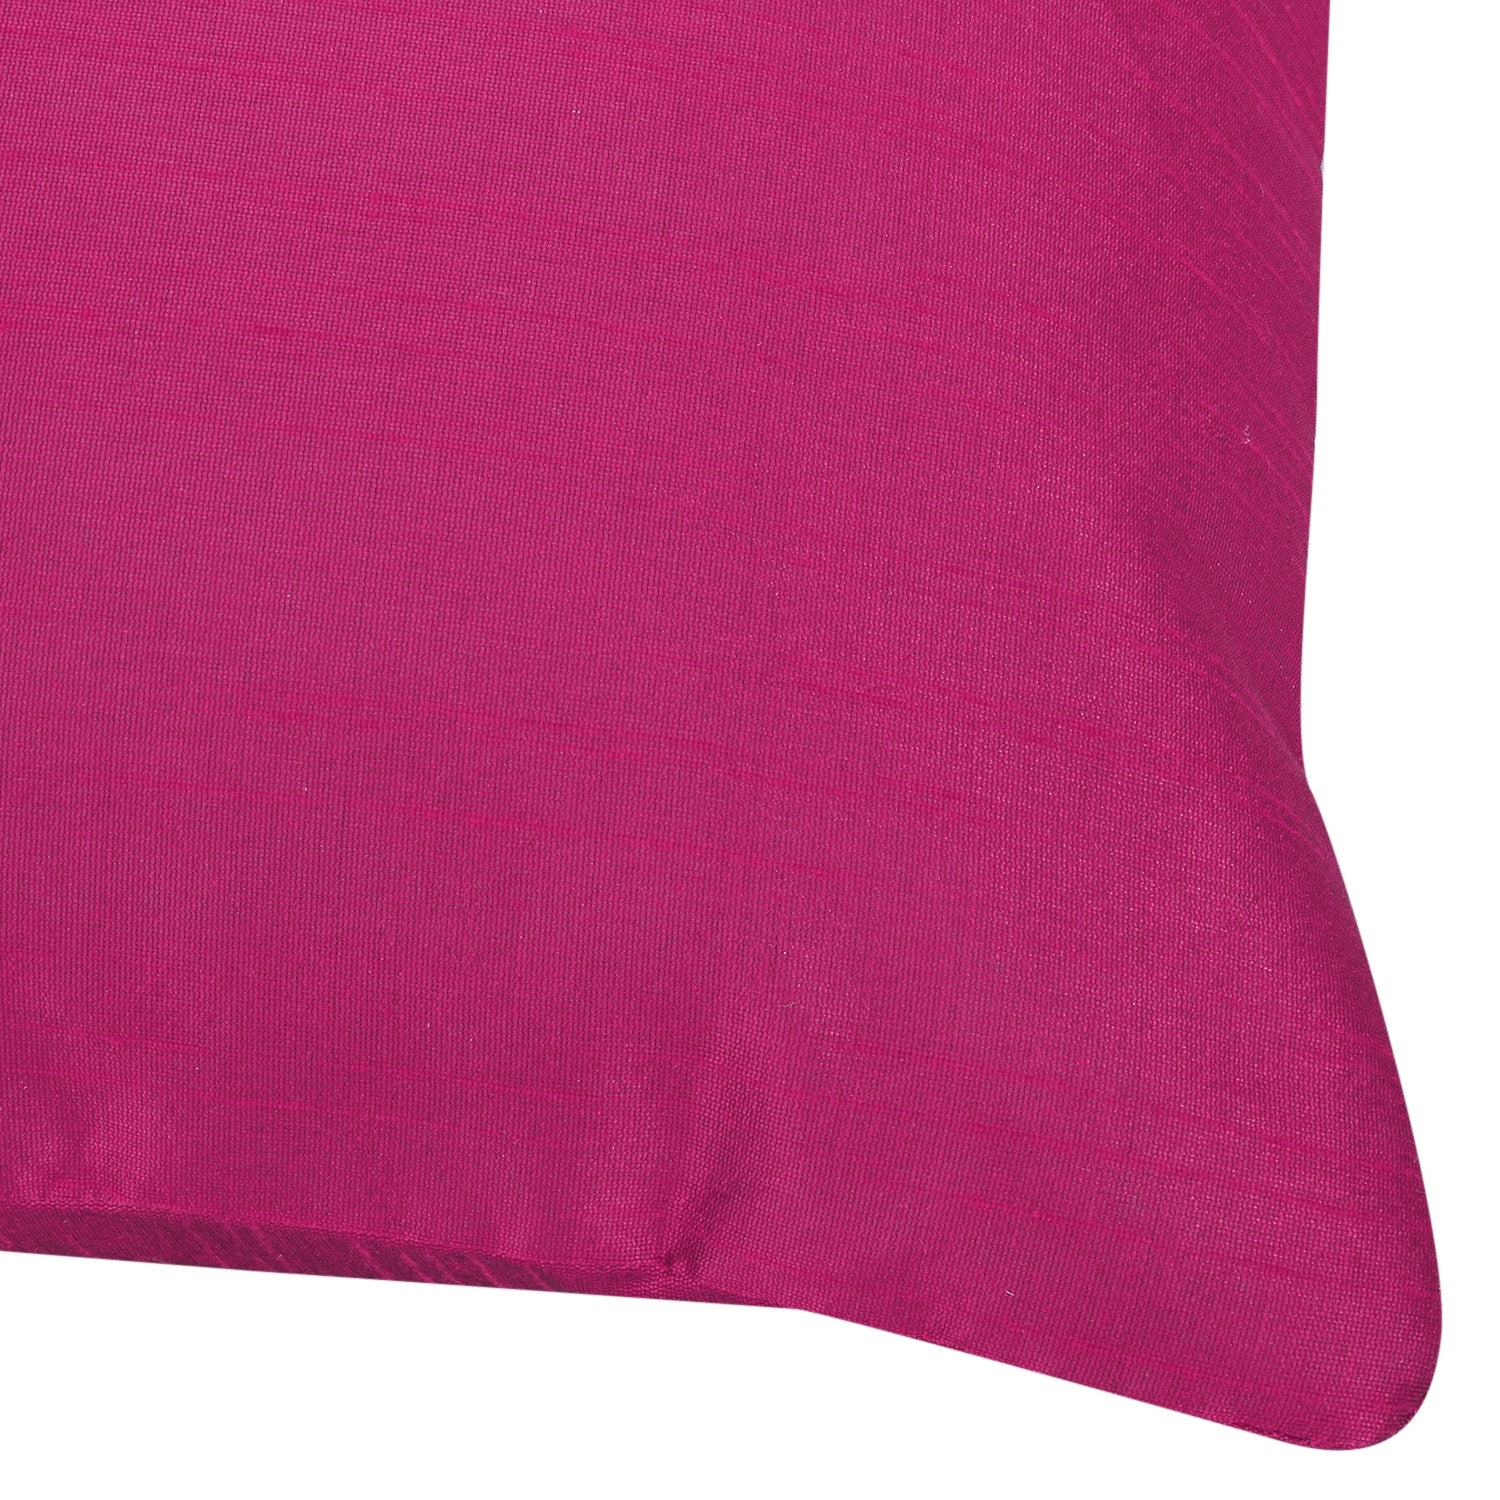 Desi Kapda Plain Cushions & Pillows Cover